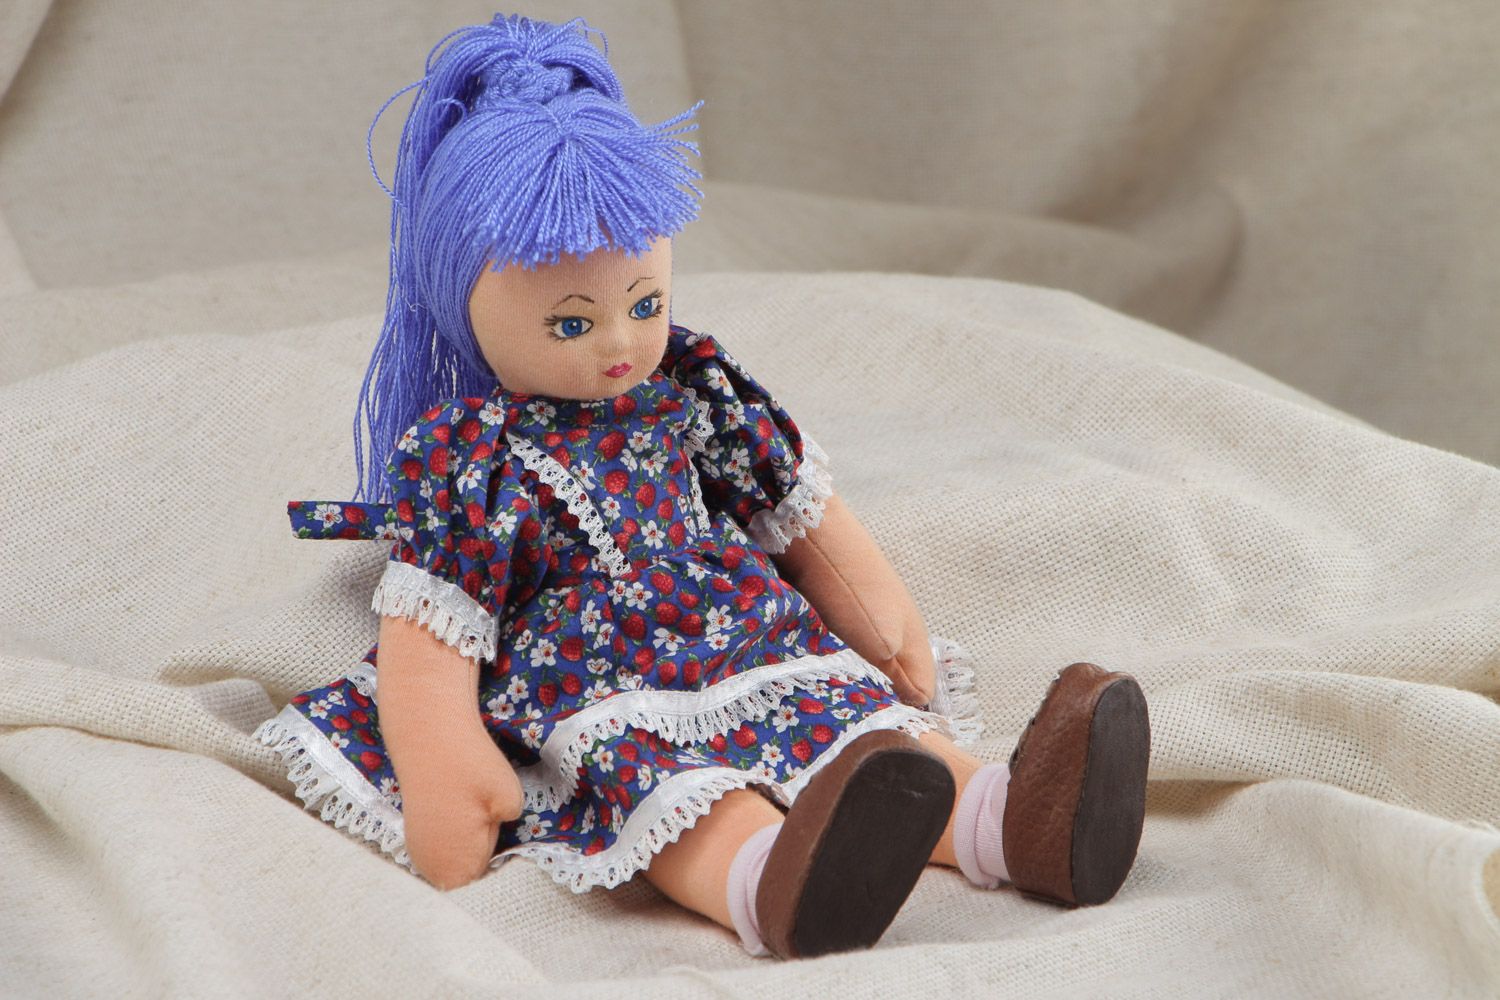 Авторская кукла с голубыми волосами ручной работы из ткани в цветном платье фото 1